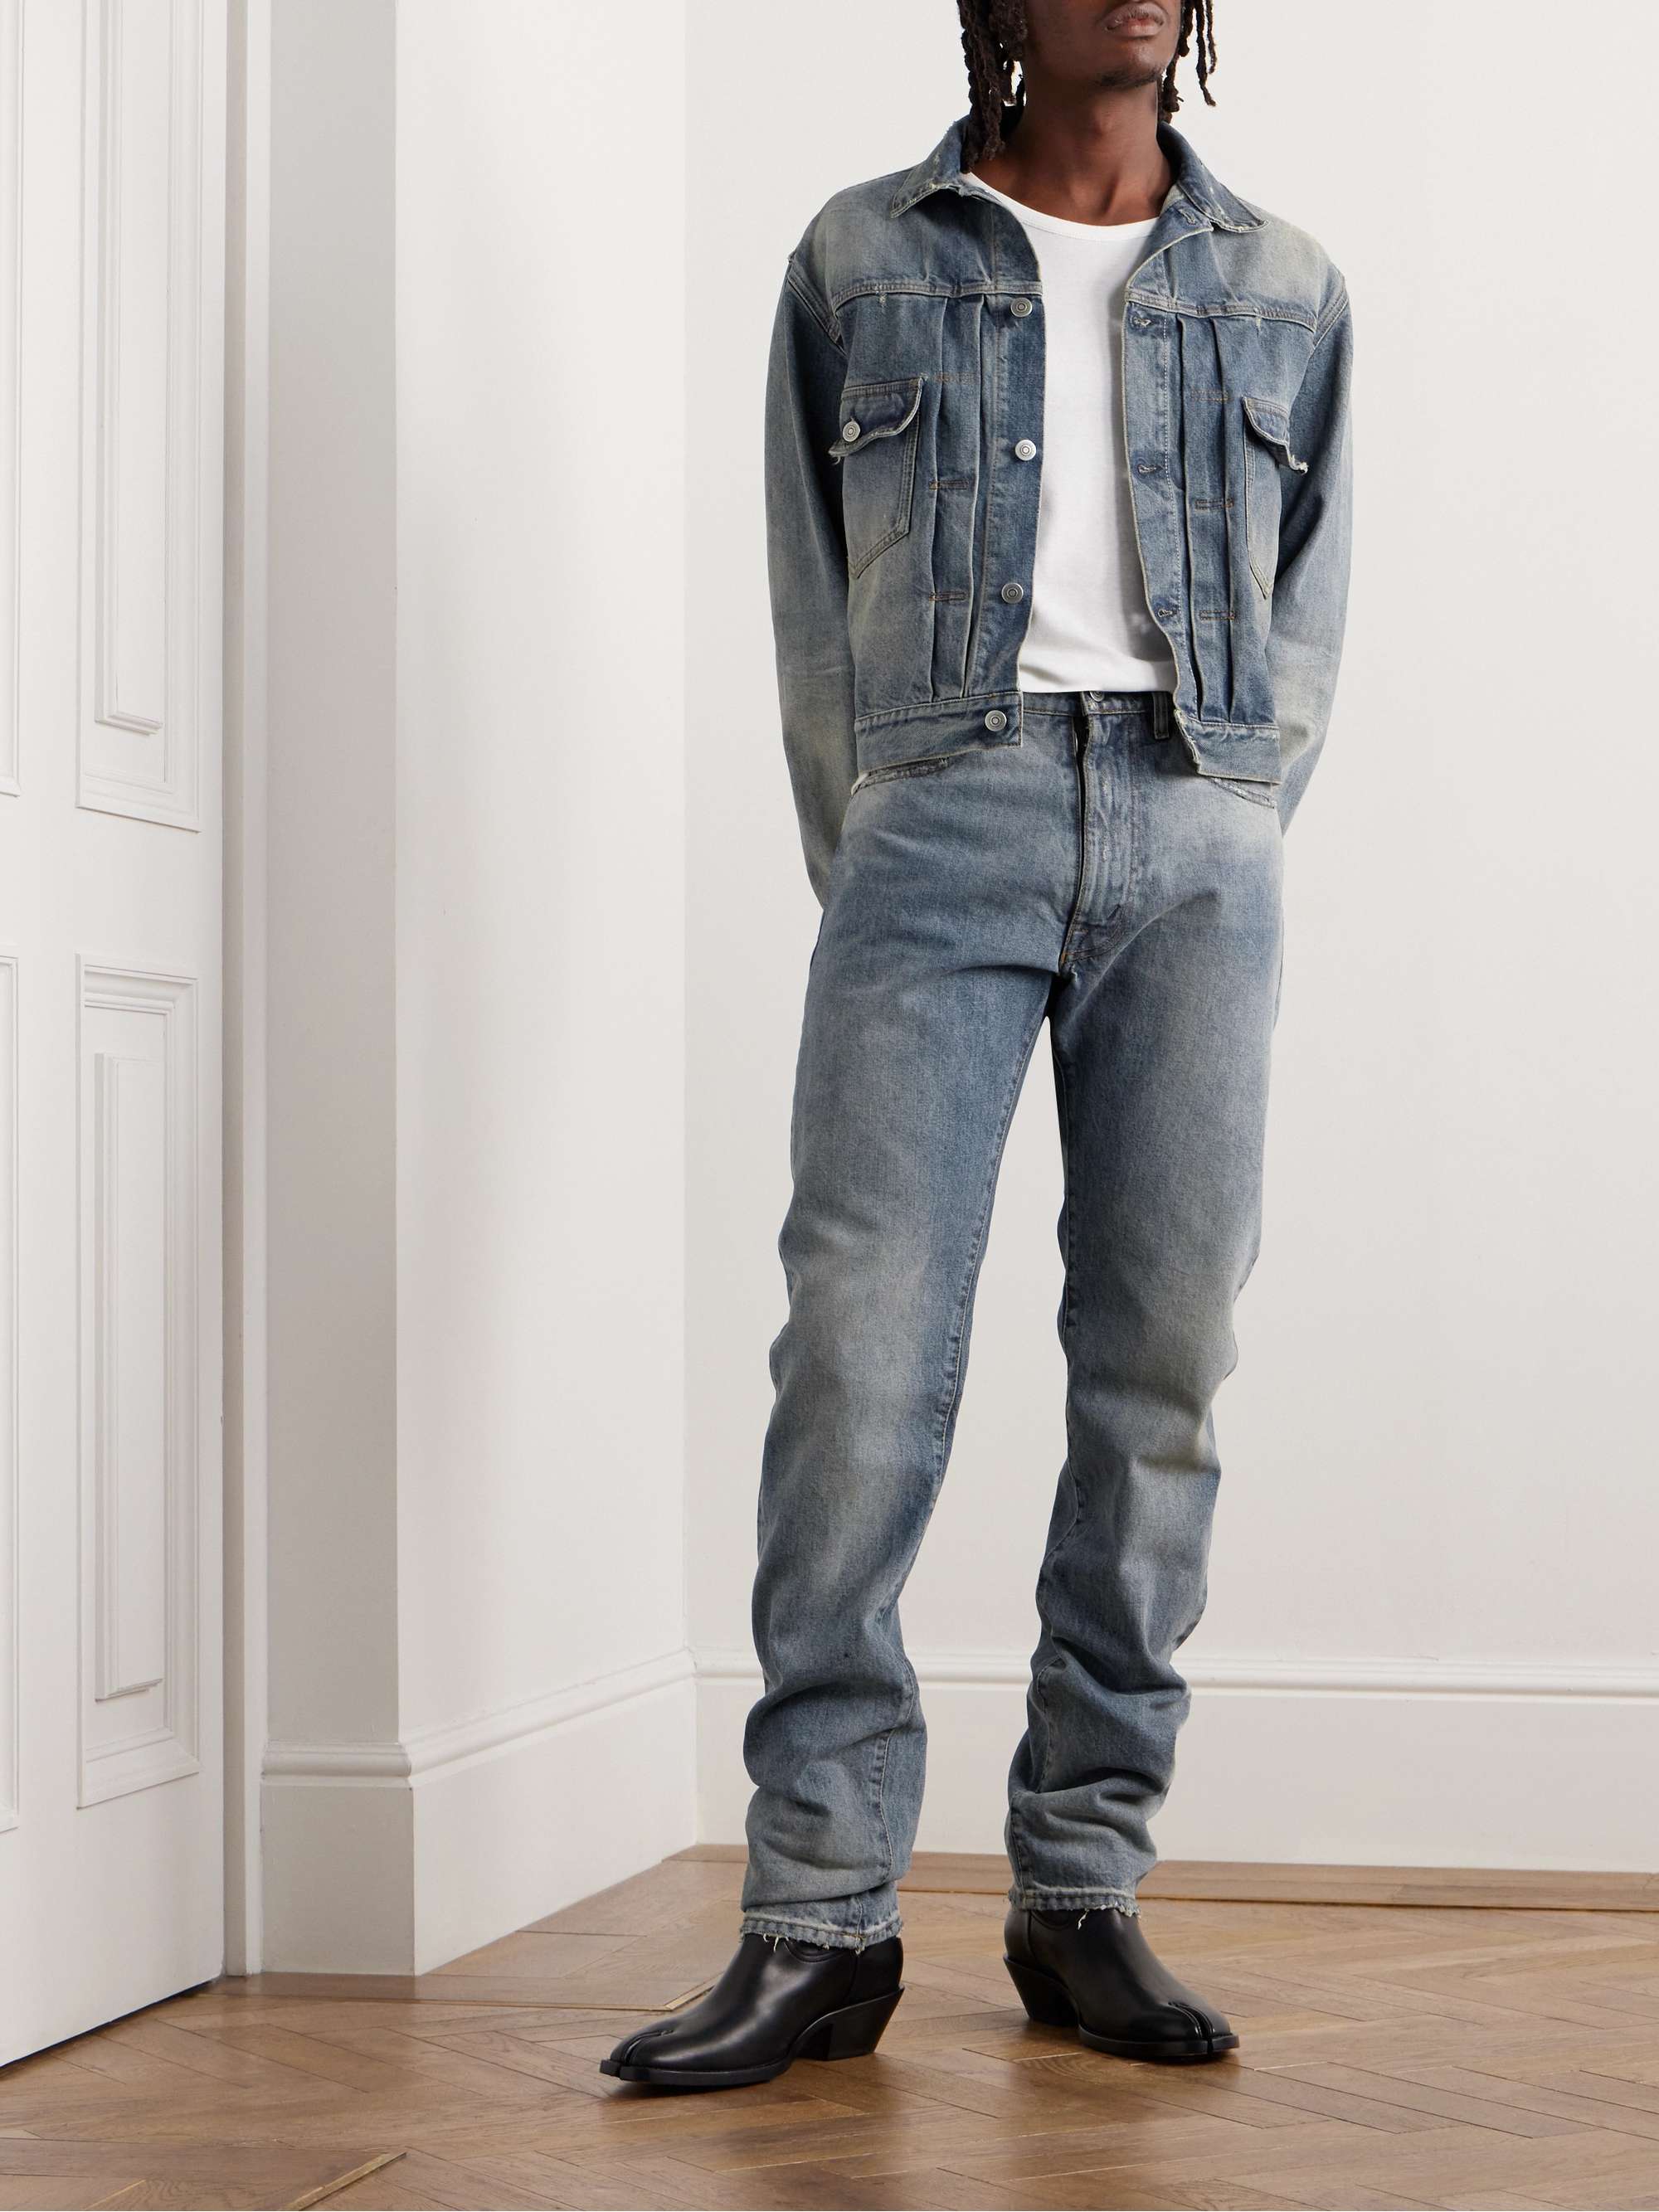 MAISON MARGIELA Straight-Leg Distressed Jeans for Men | MR PORTER